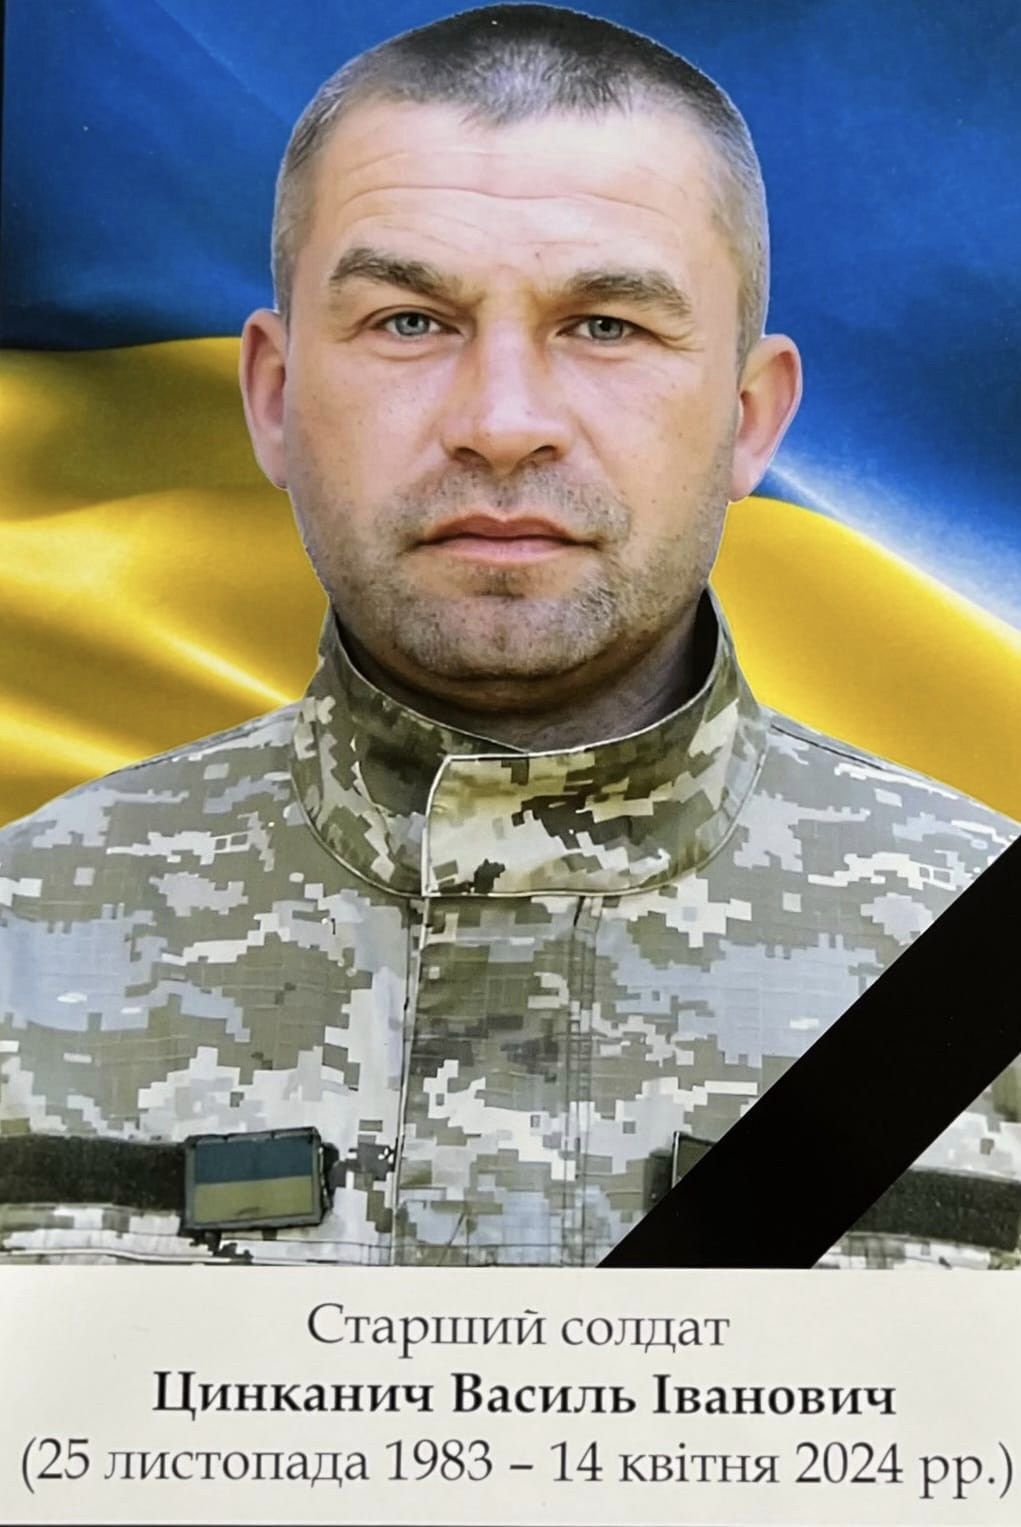 "Боролся за мирное будущее": в боях за Украину погиб защитник с Закарпатья. Фото